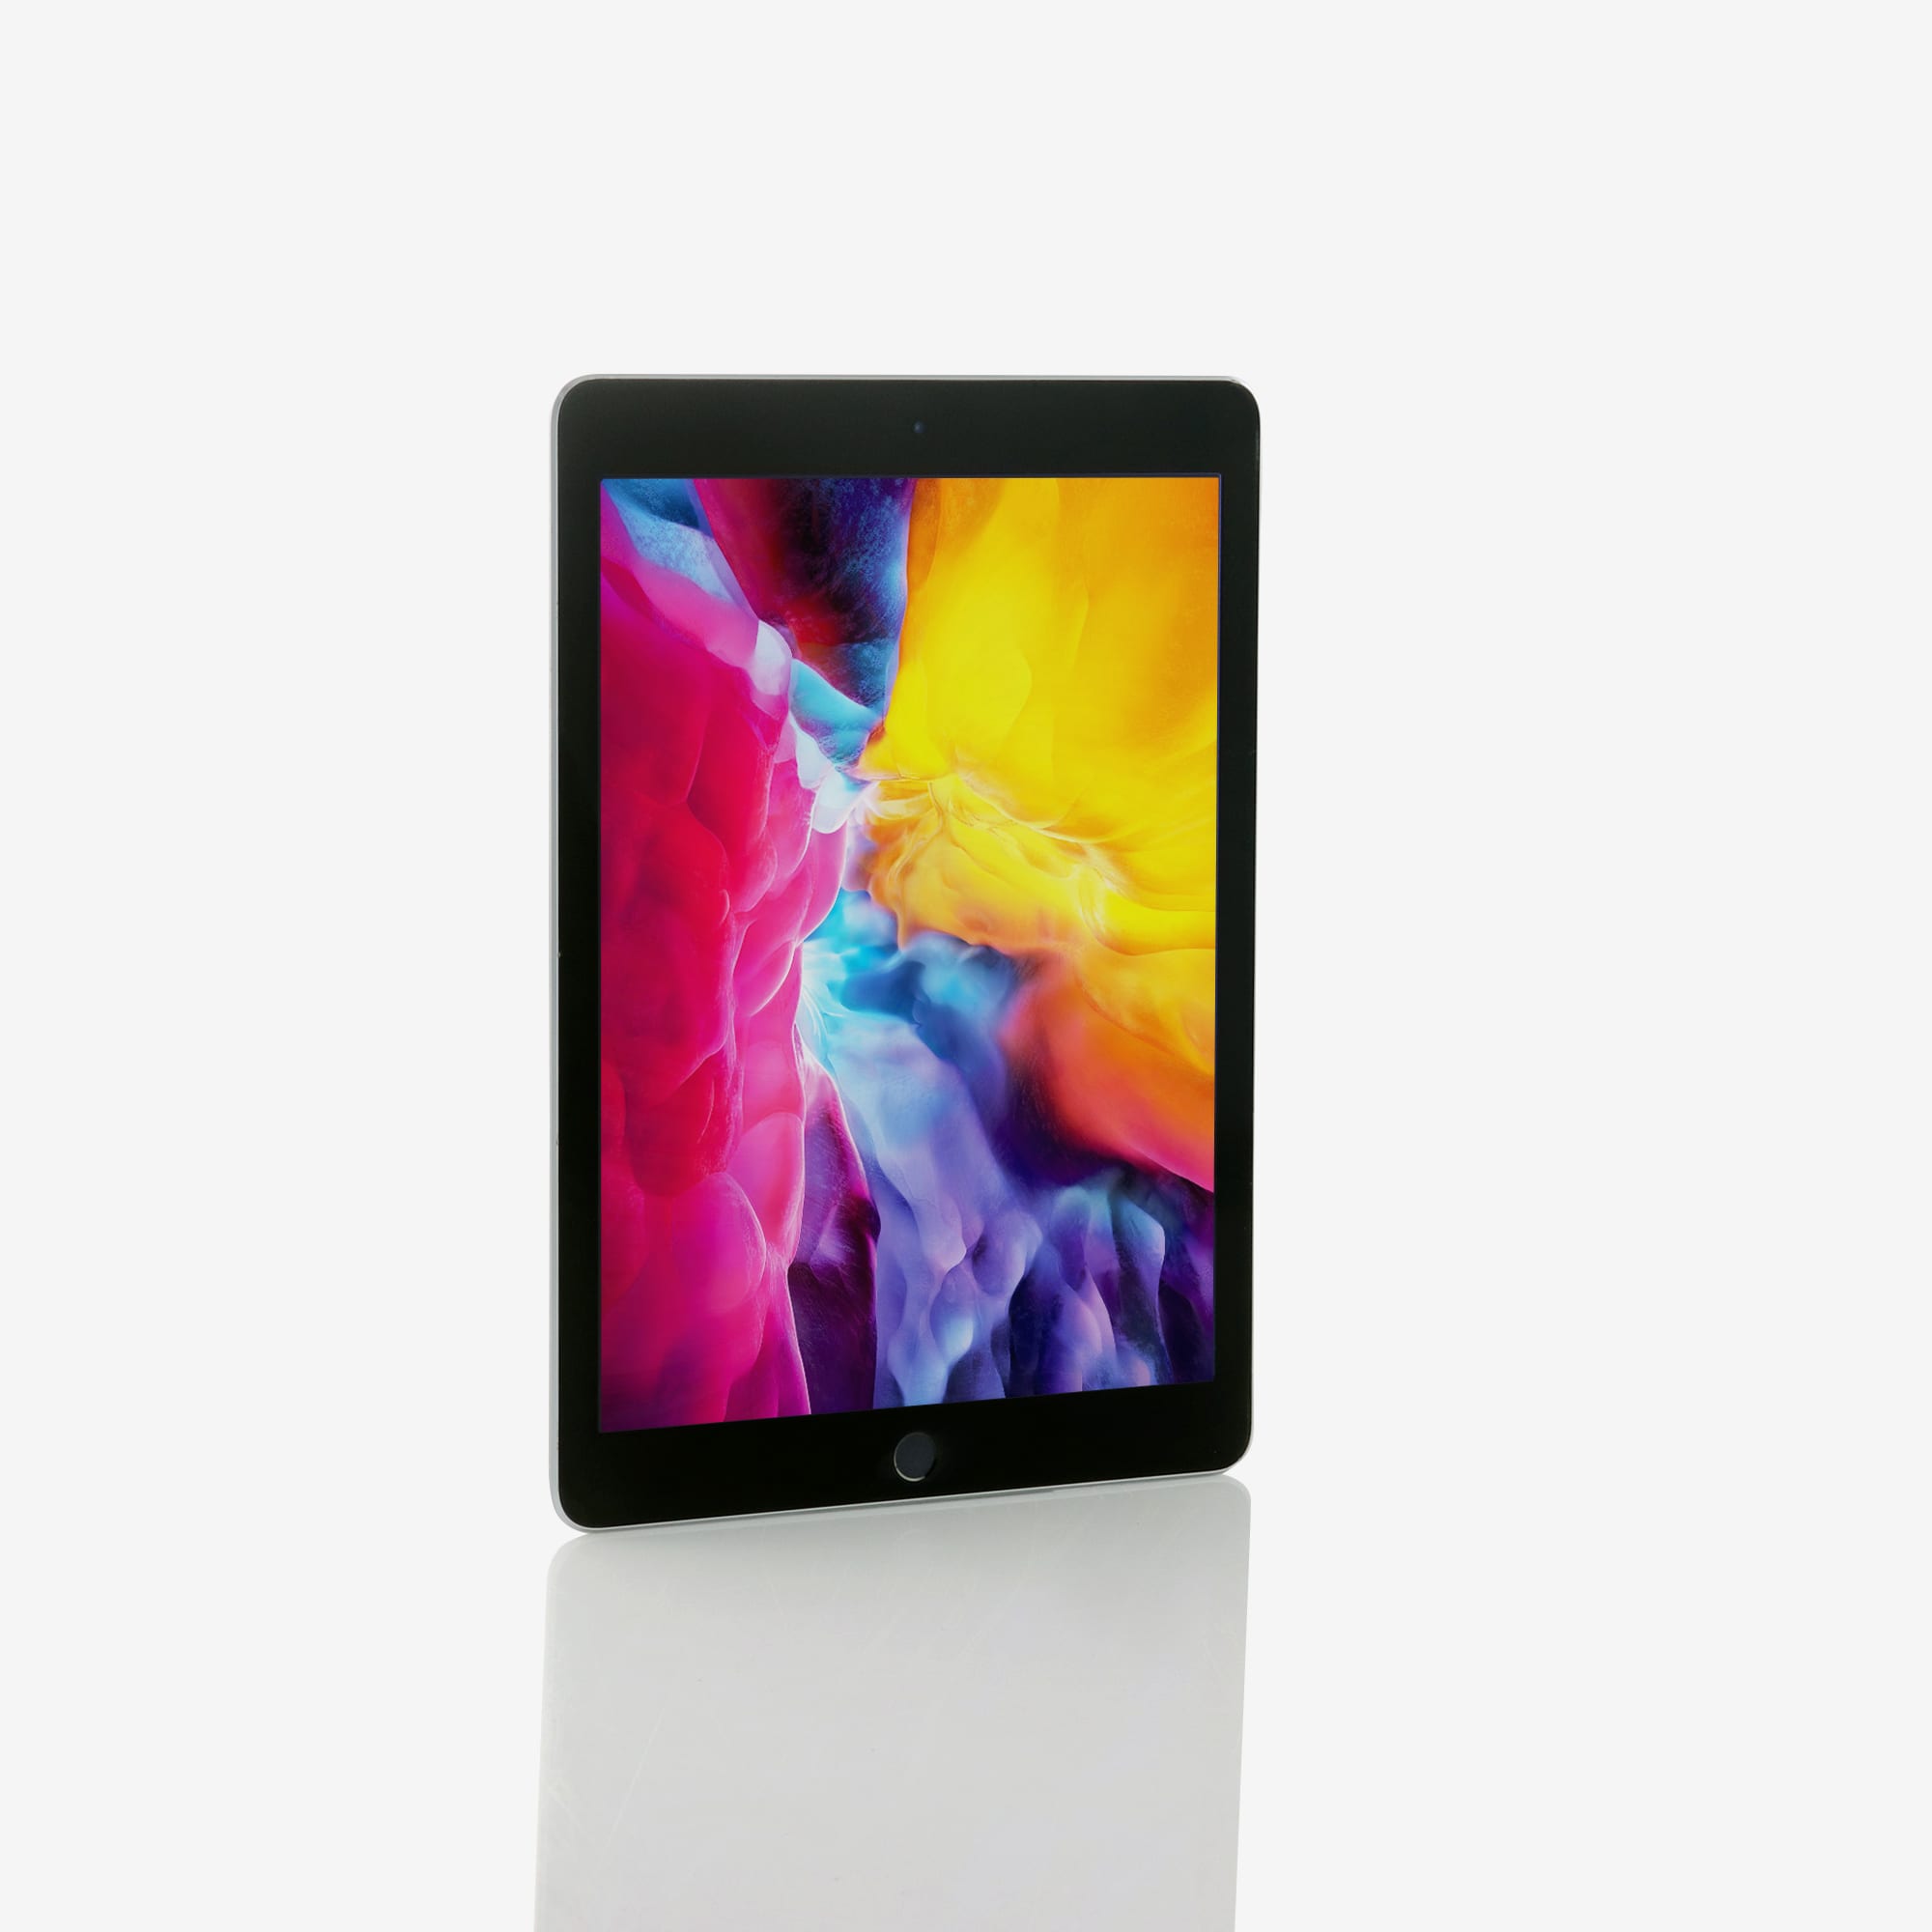 1 x iPad Air 2 (Wi-Fi) Space Grey